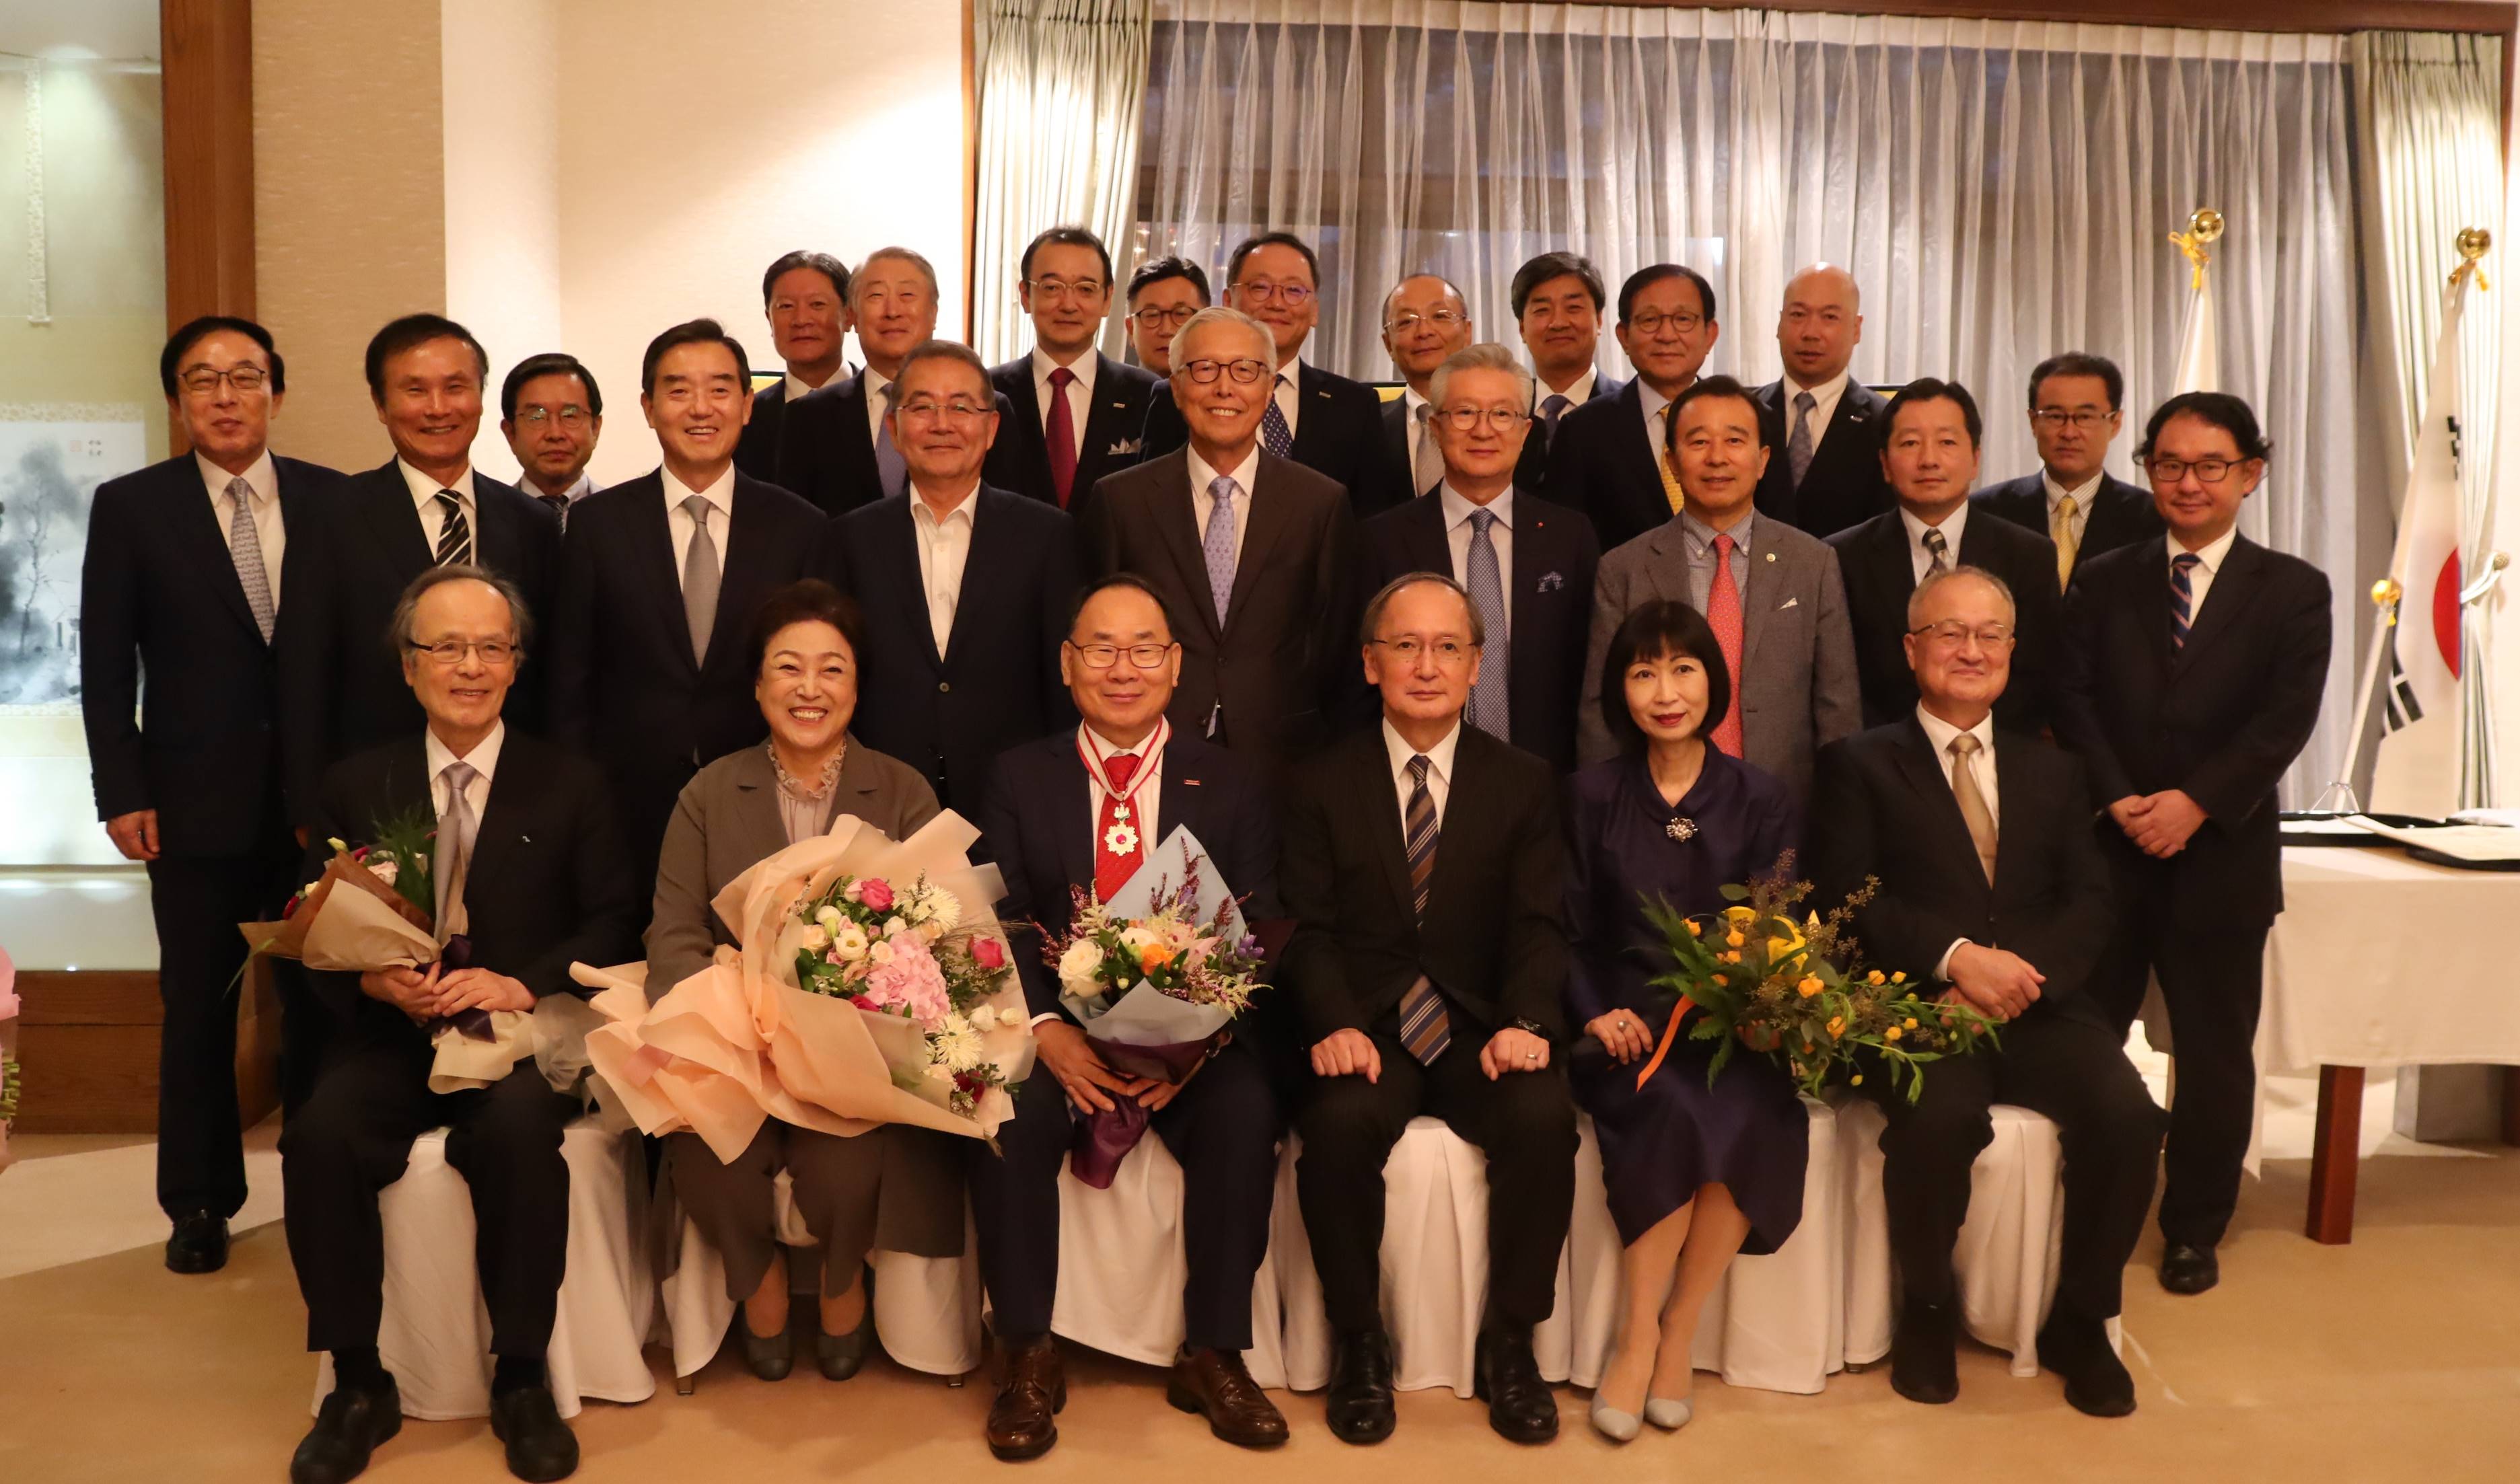 李泳官会長、日韓経済協力増進の貢献で日本政府から褒章